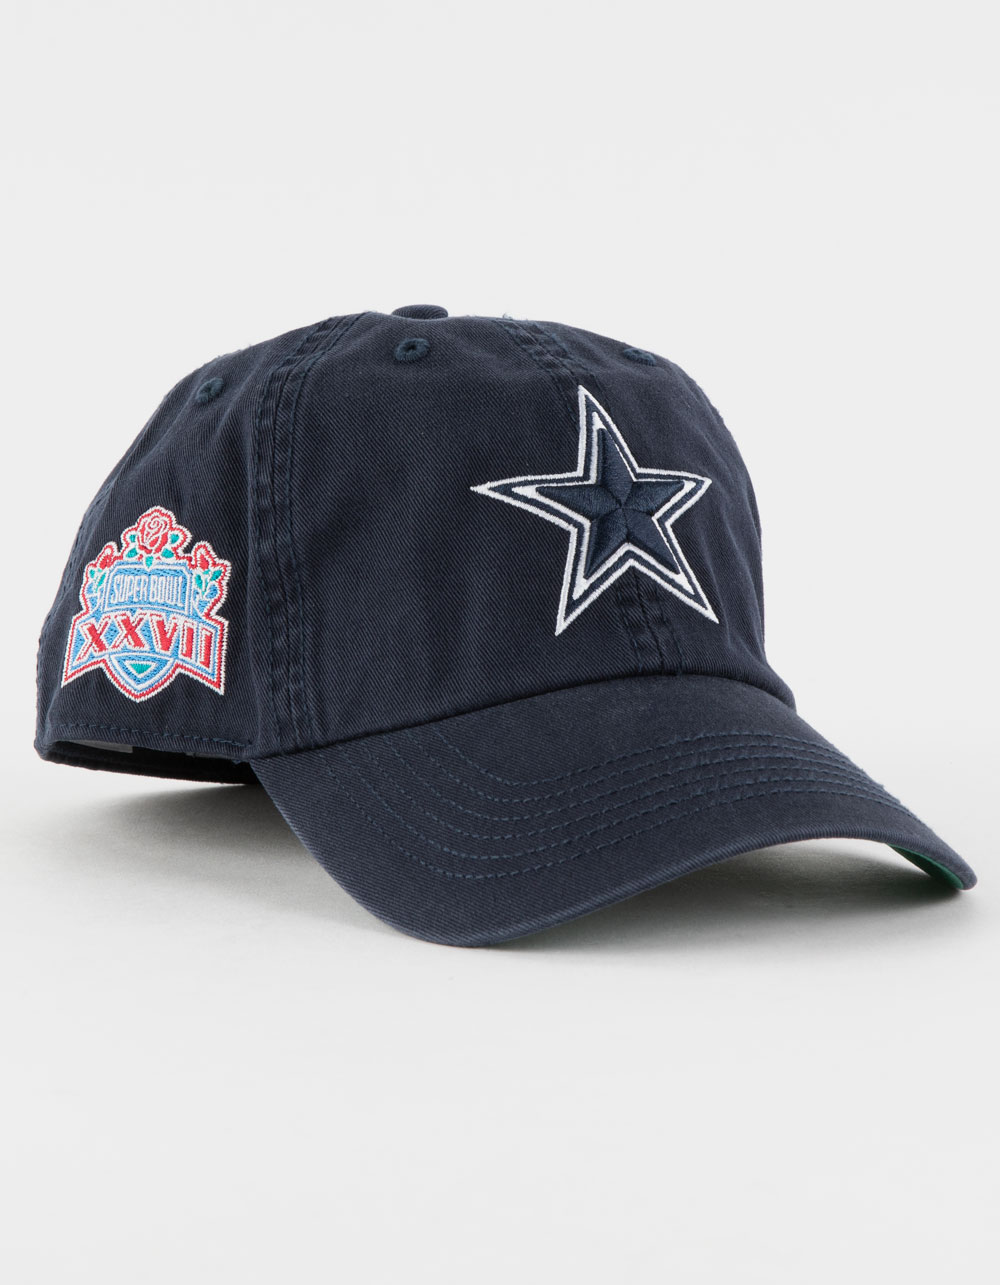 '47 Dallas Cowboys Trucker Cap